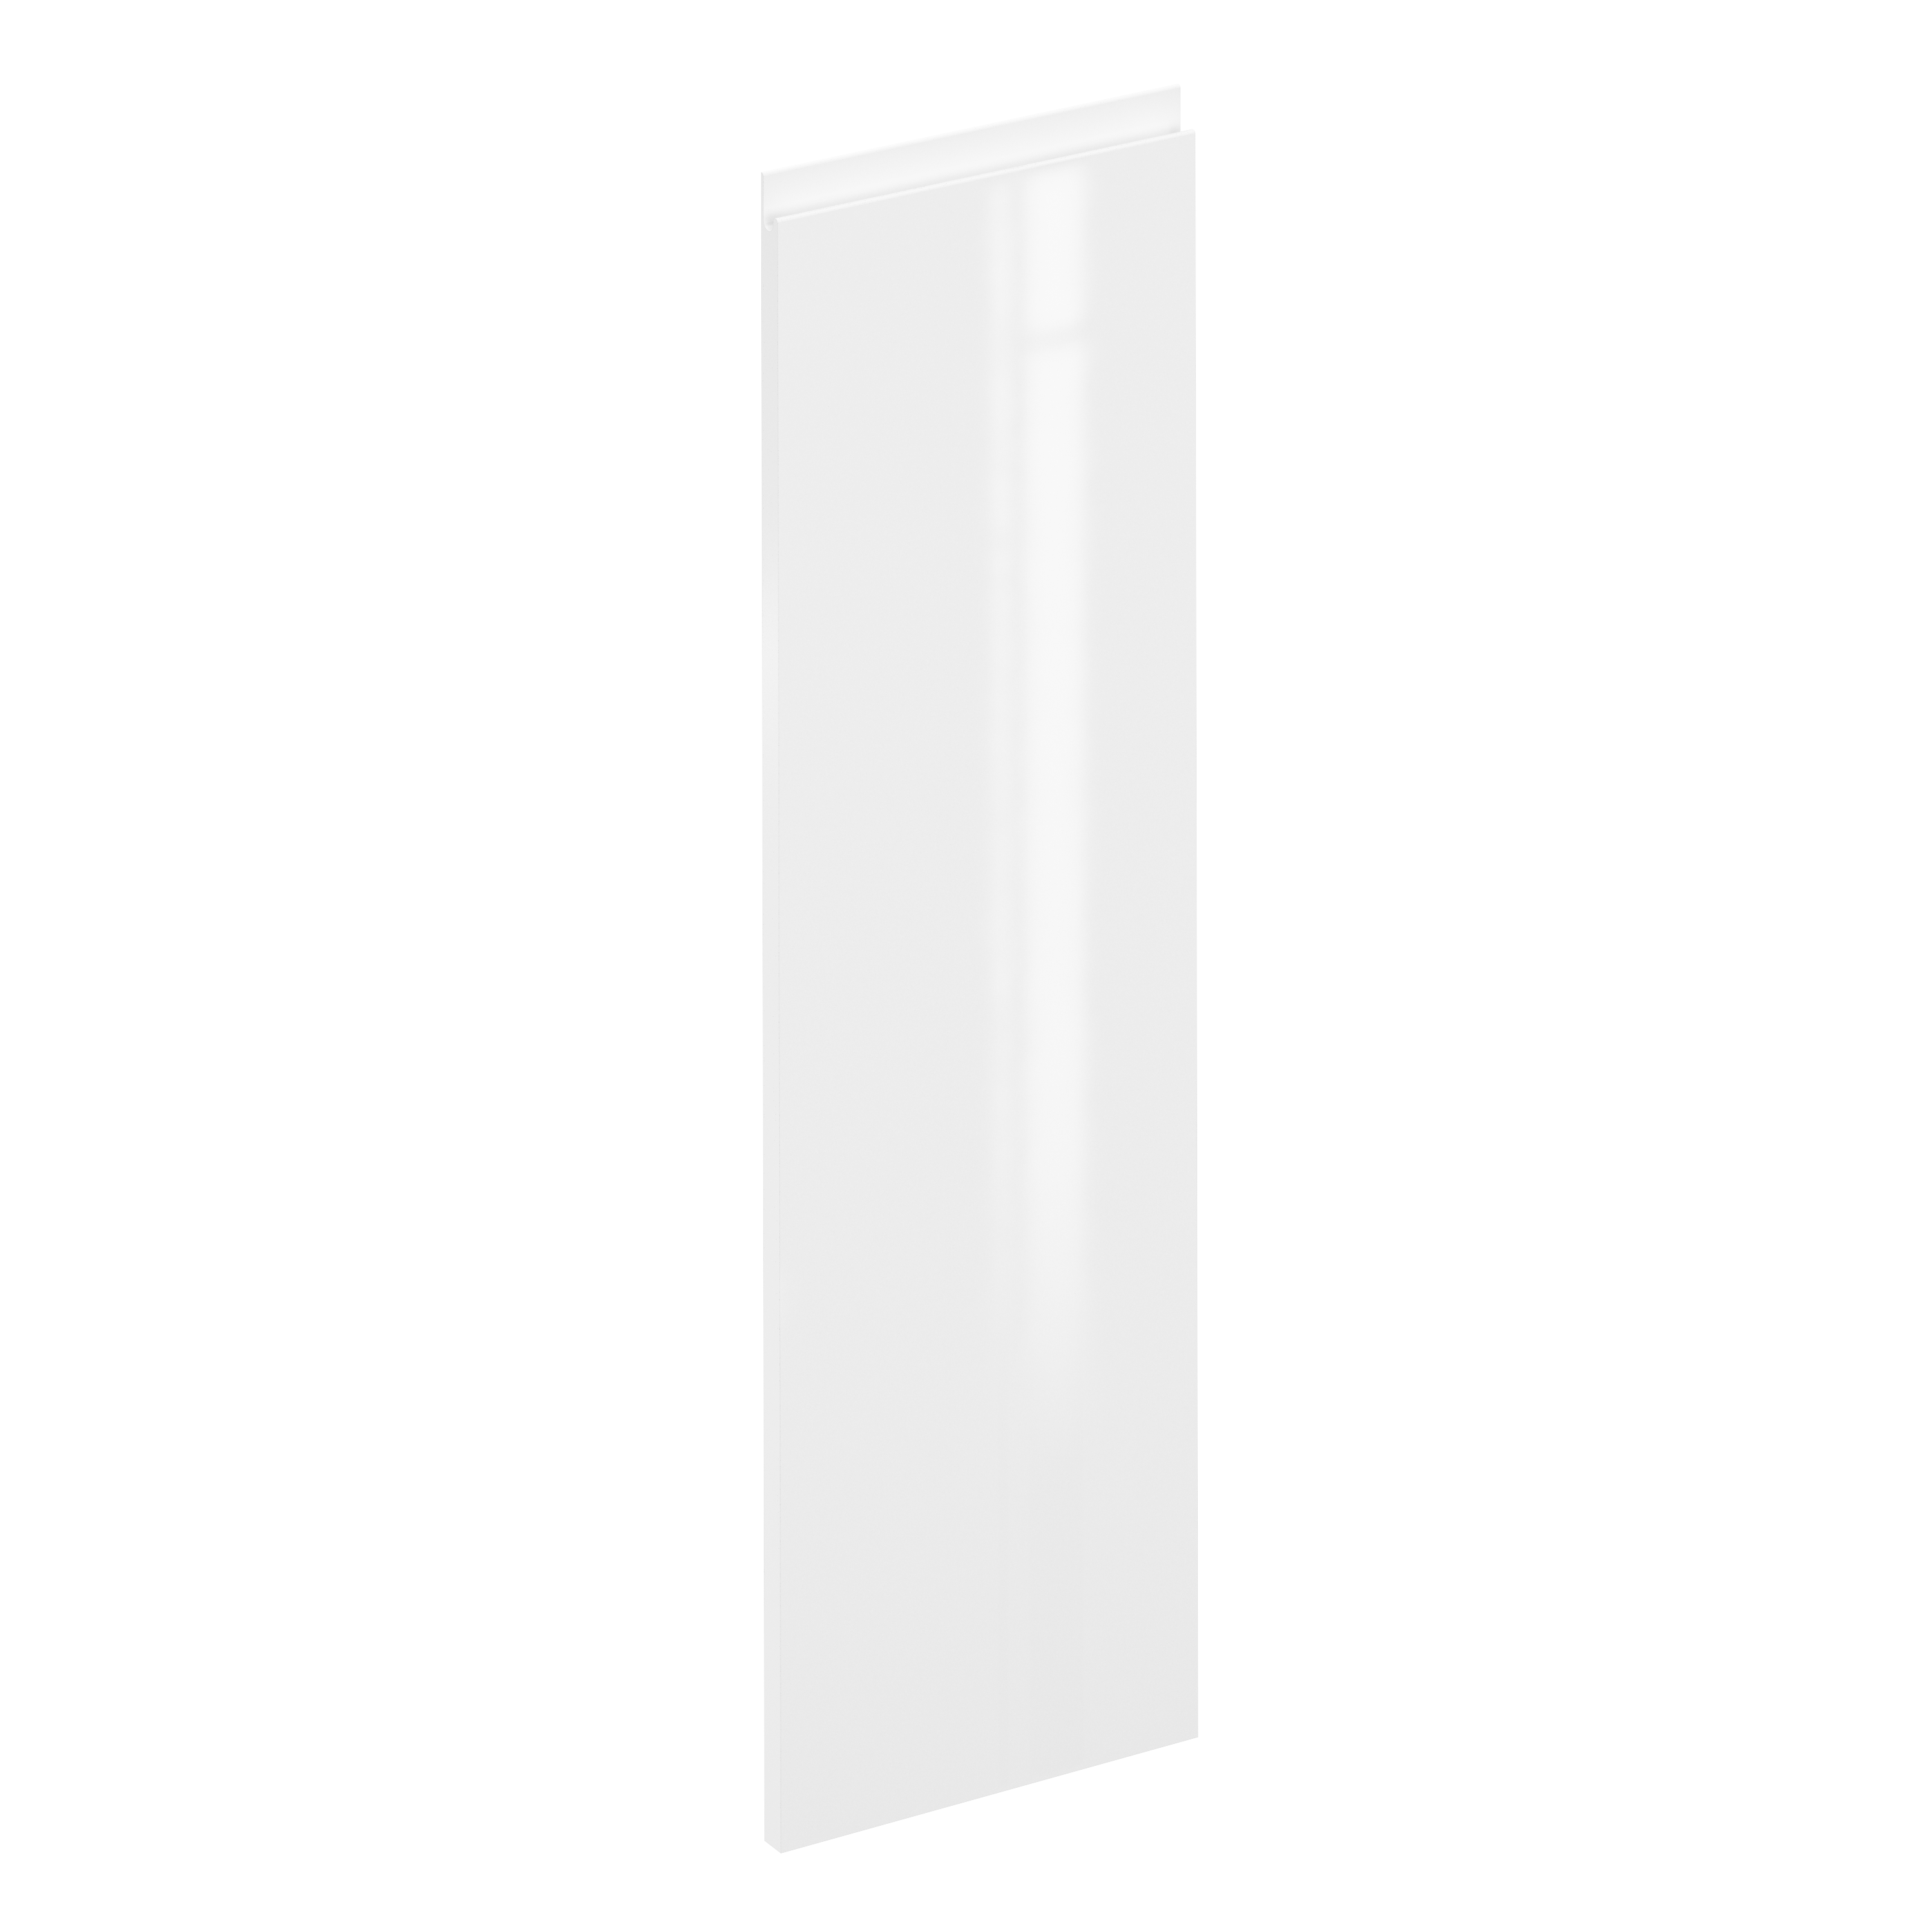 Puerta para mueble de cocina tokyo blanco brillo h 102.4 x l 30 cm